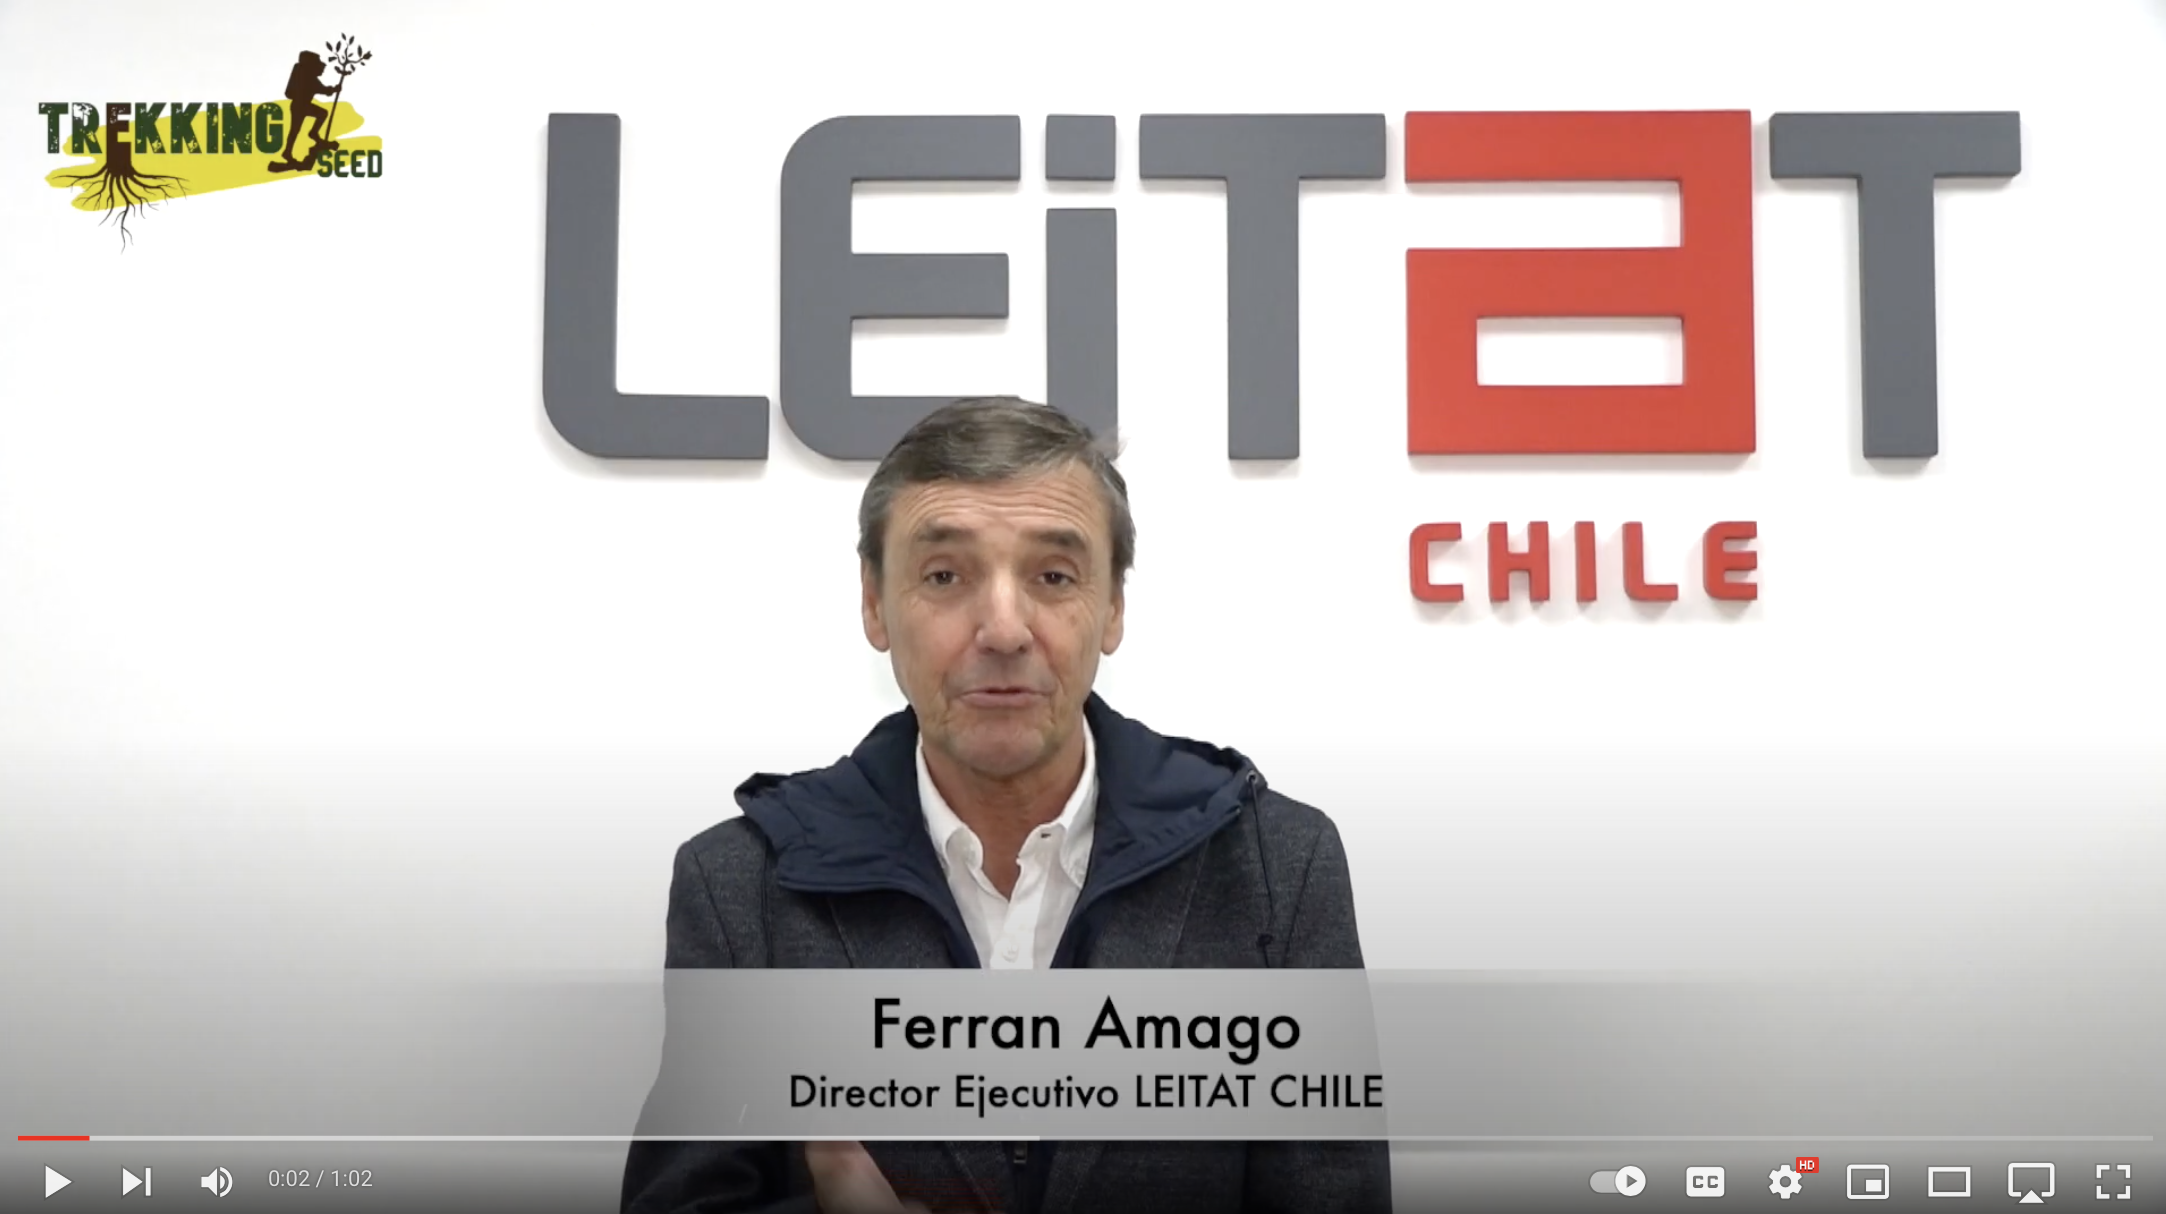 Alianza LEITAT CHILE & TREKKING SEED